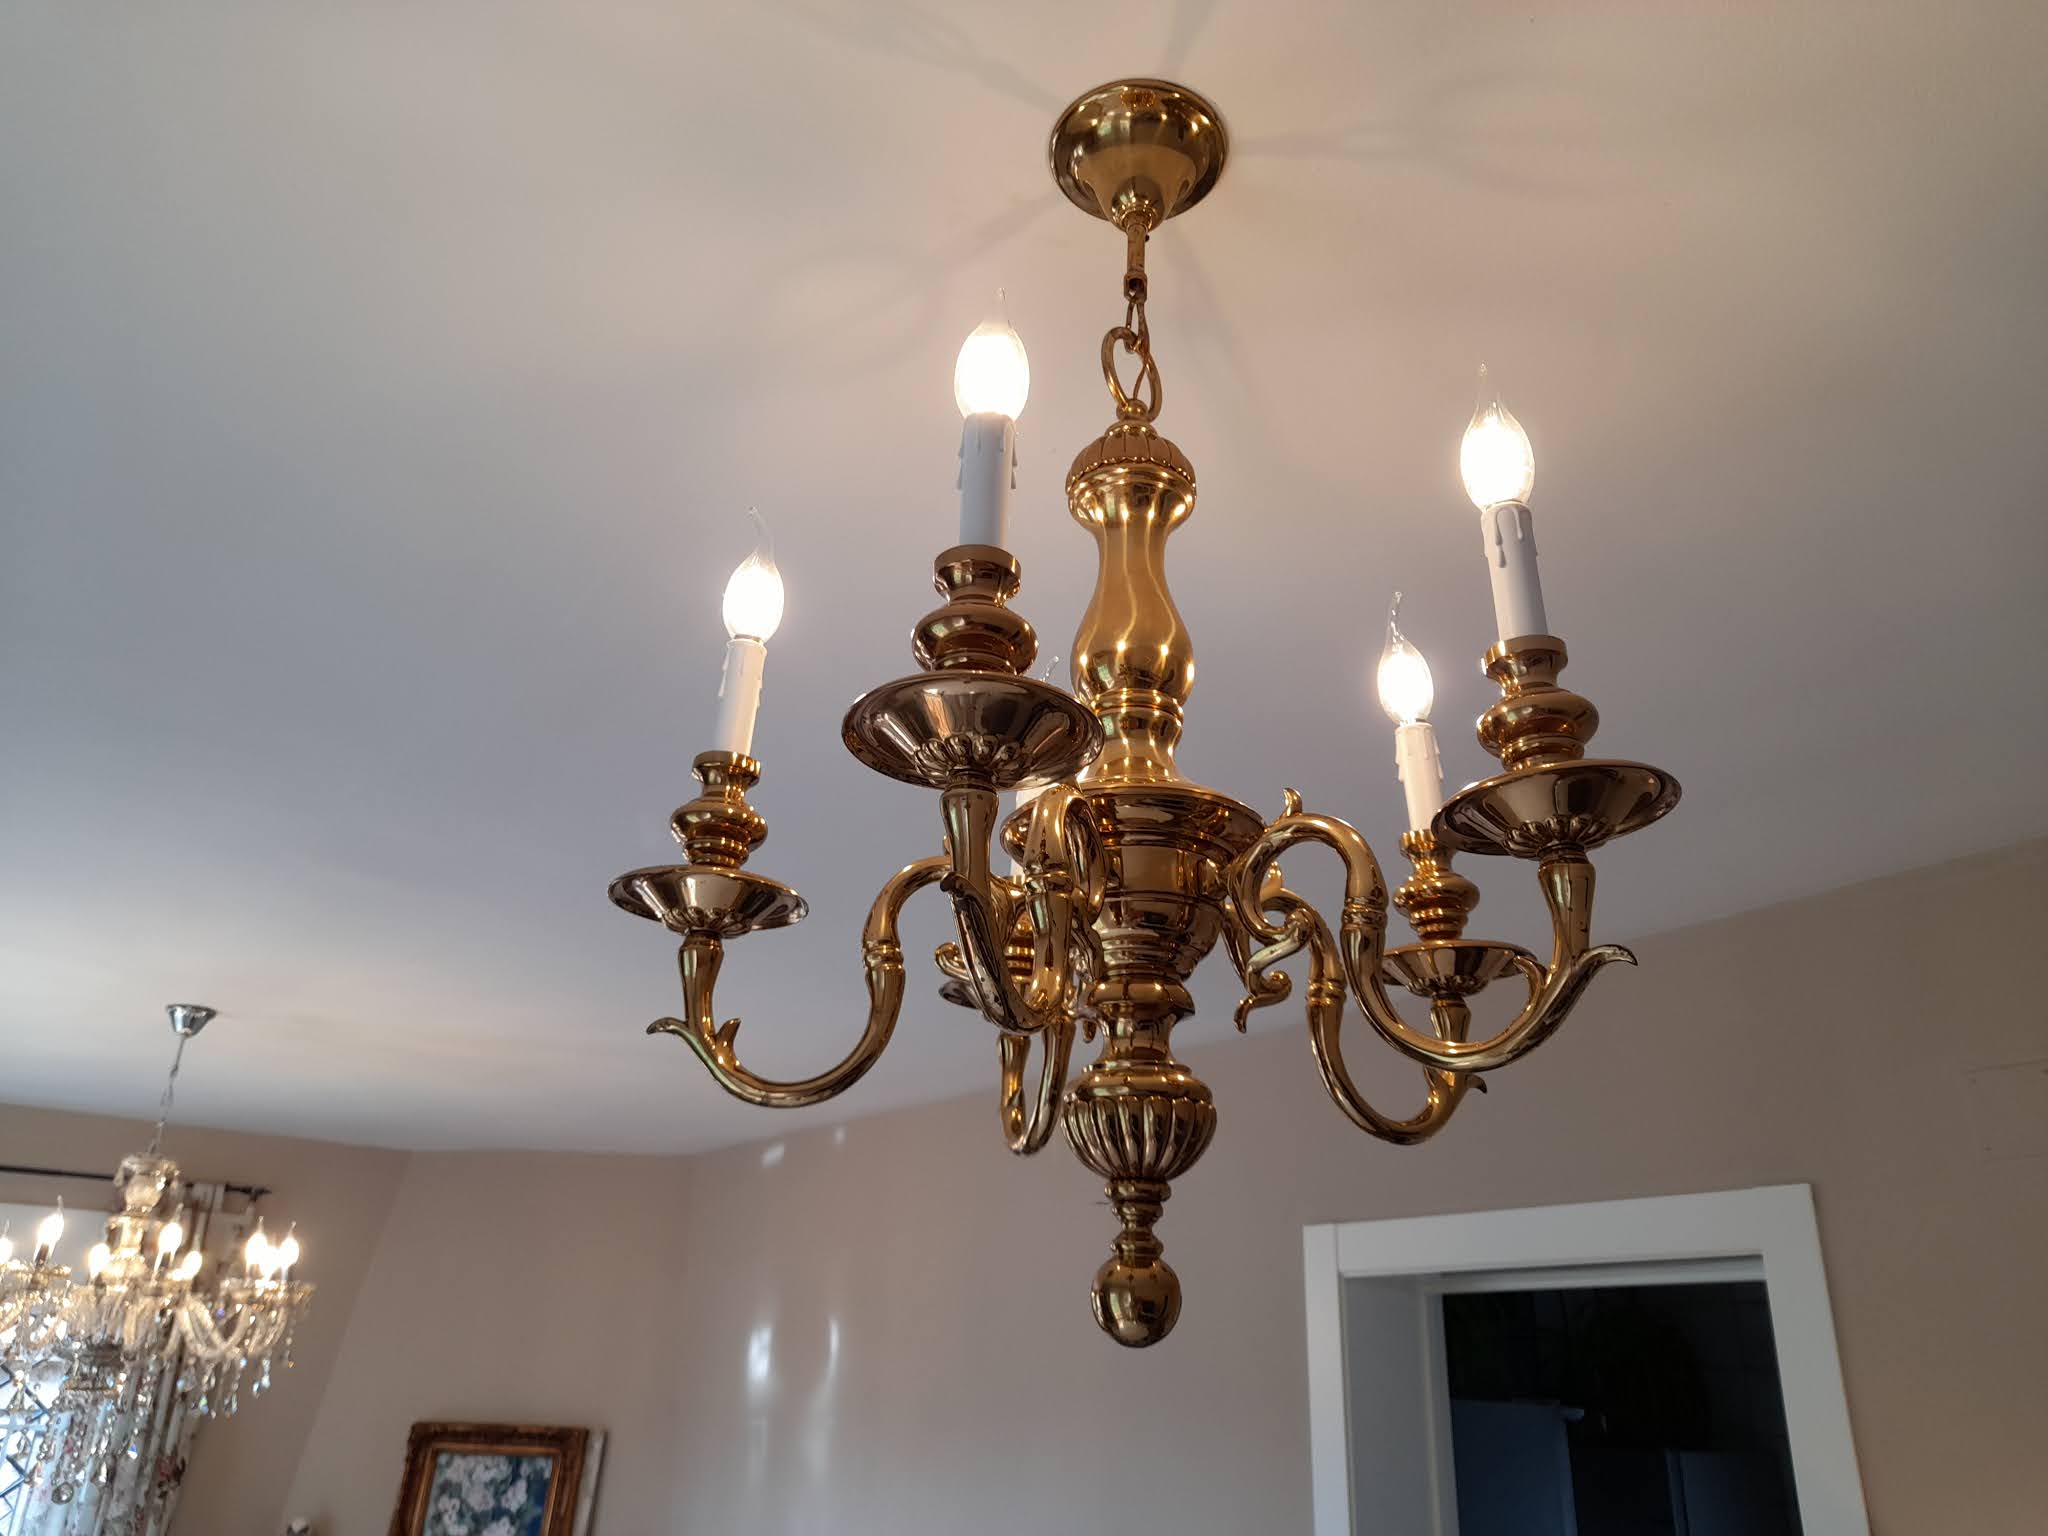 El jardín de la alegría : I/III Tutorial: Restaurar una chandelier de brazos lámpara araña de bronce y cristales).